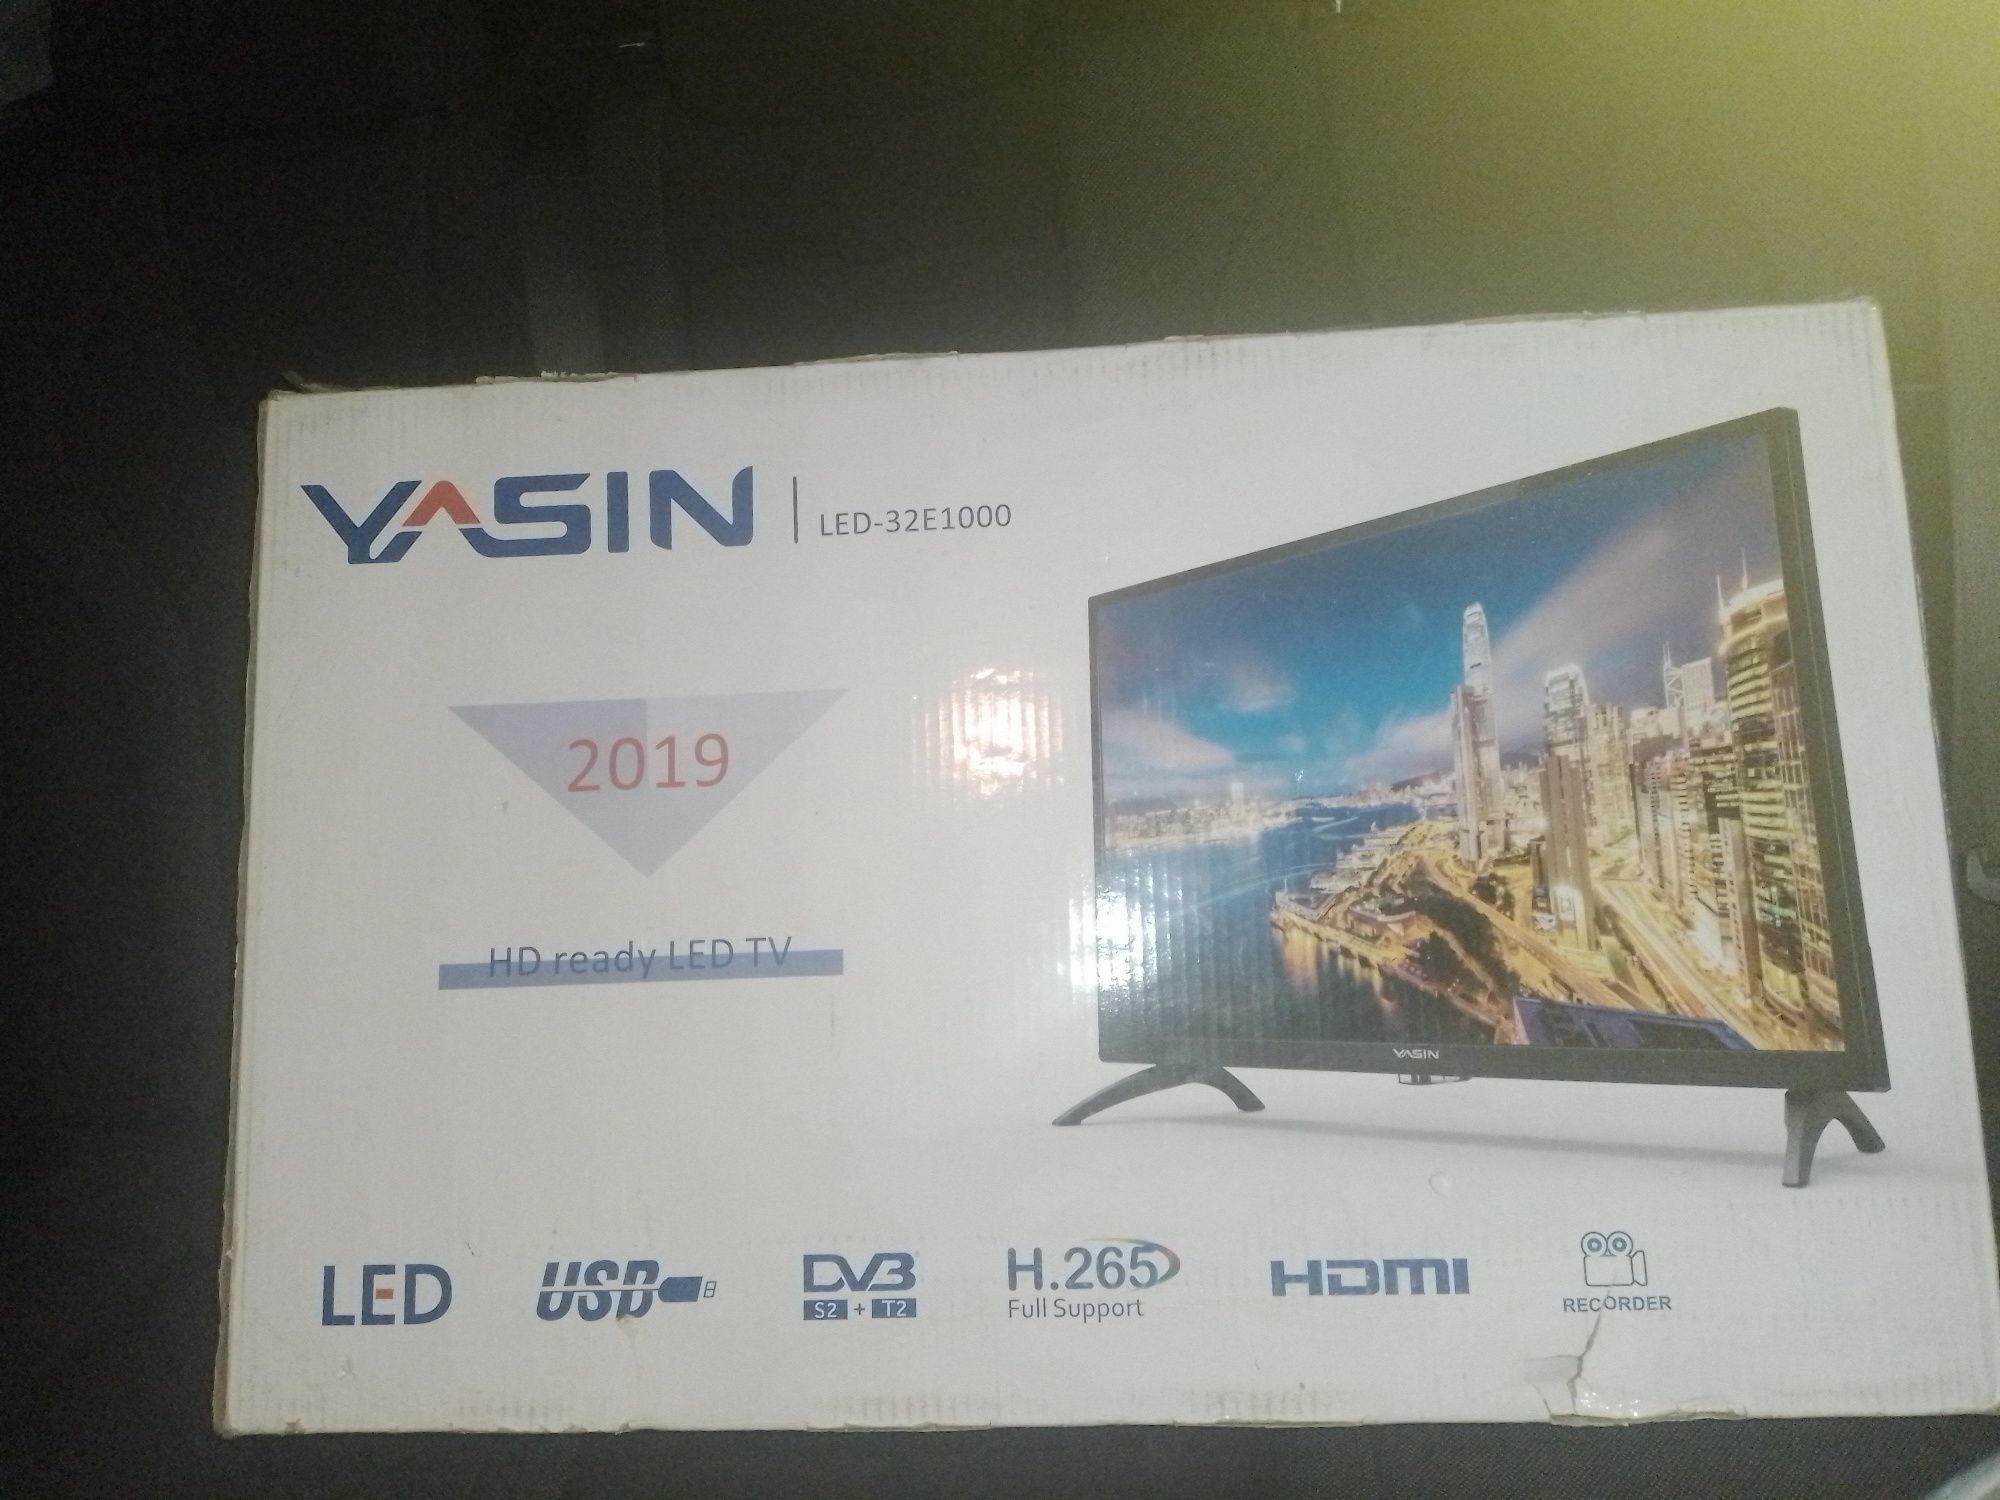 Новый телевизор Ясин